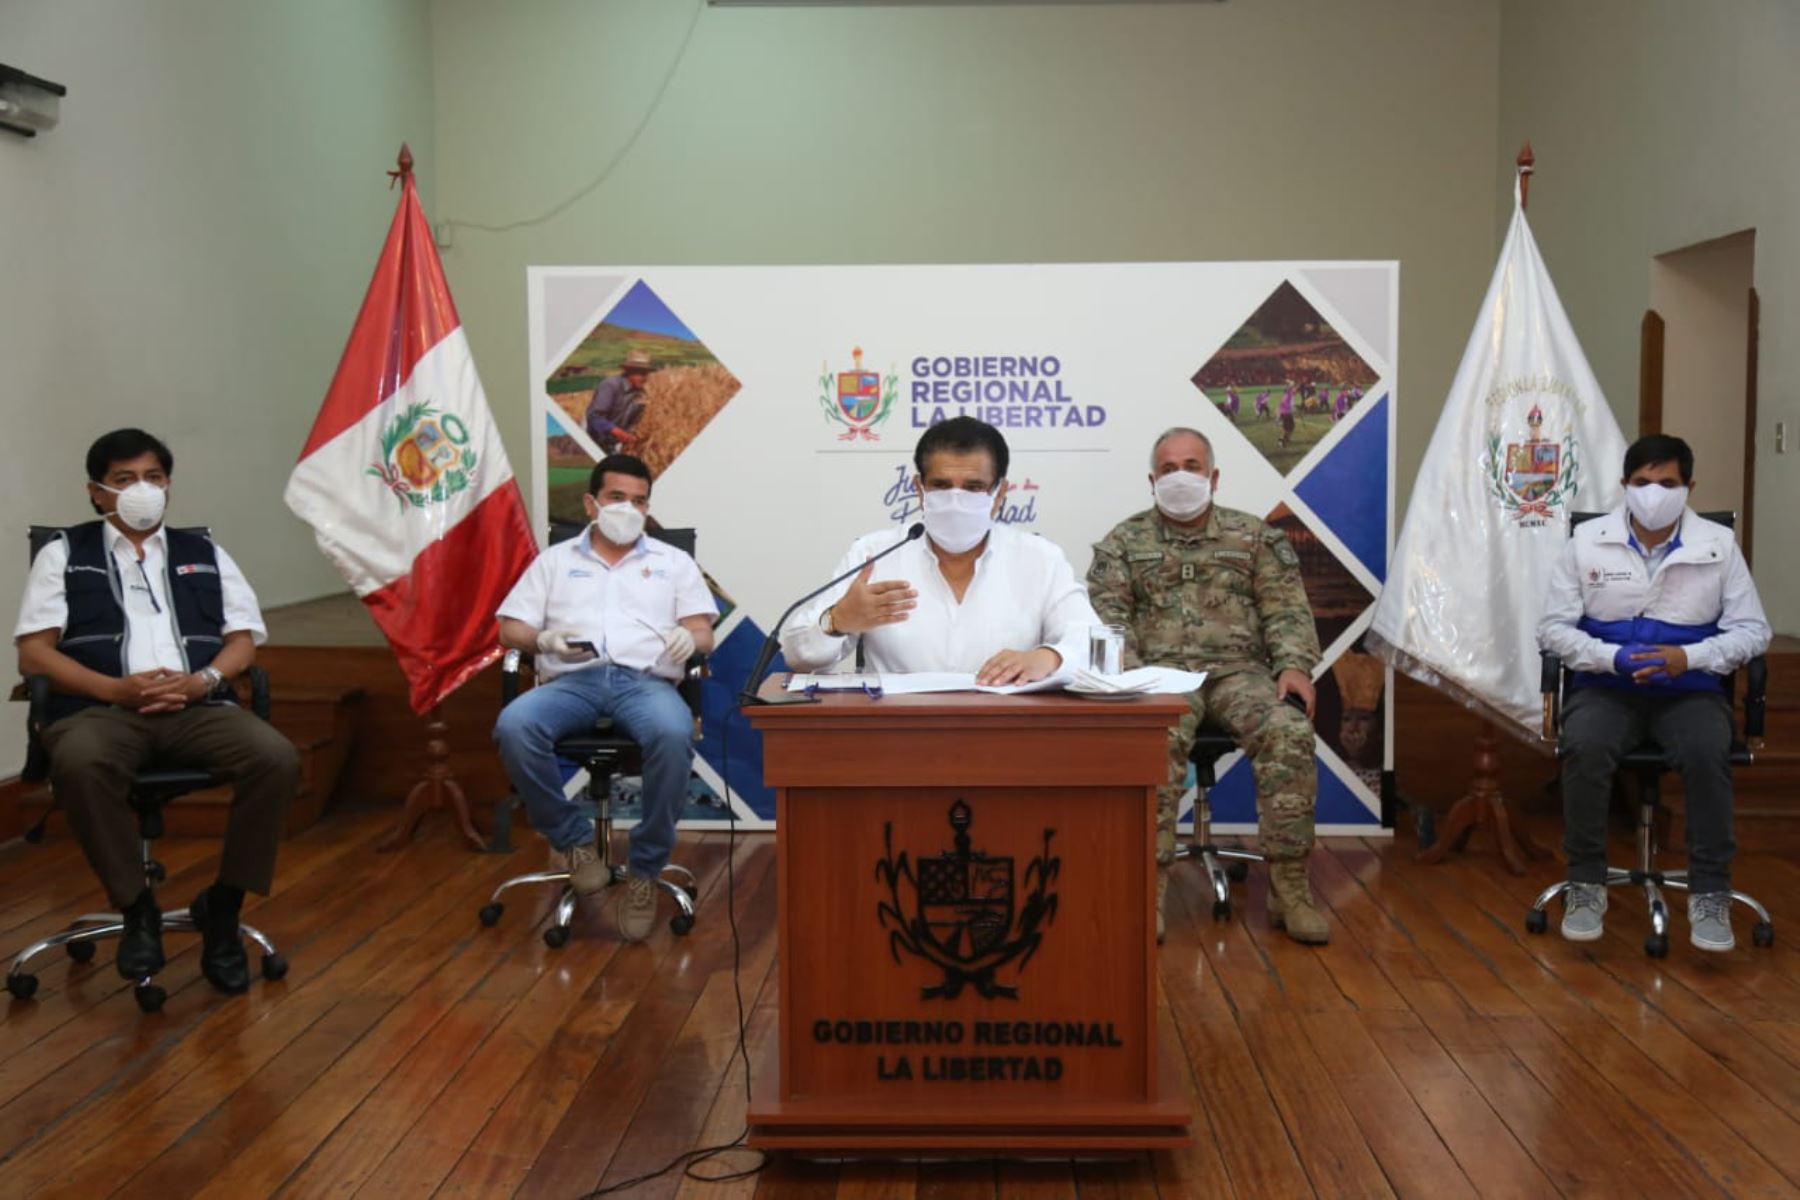 El Gobierno Regional de La Libertad diseñó aplicación para adquirir productos por delivery en Trujillo. Foto: Gobierno Regional de La Libertad.